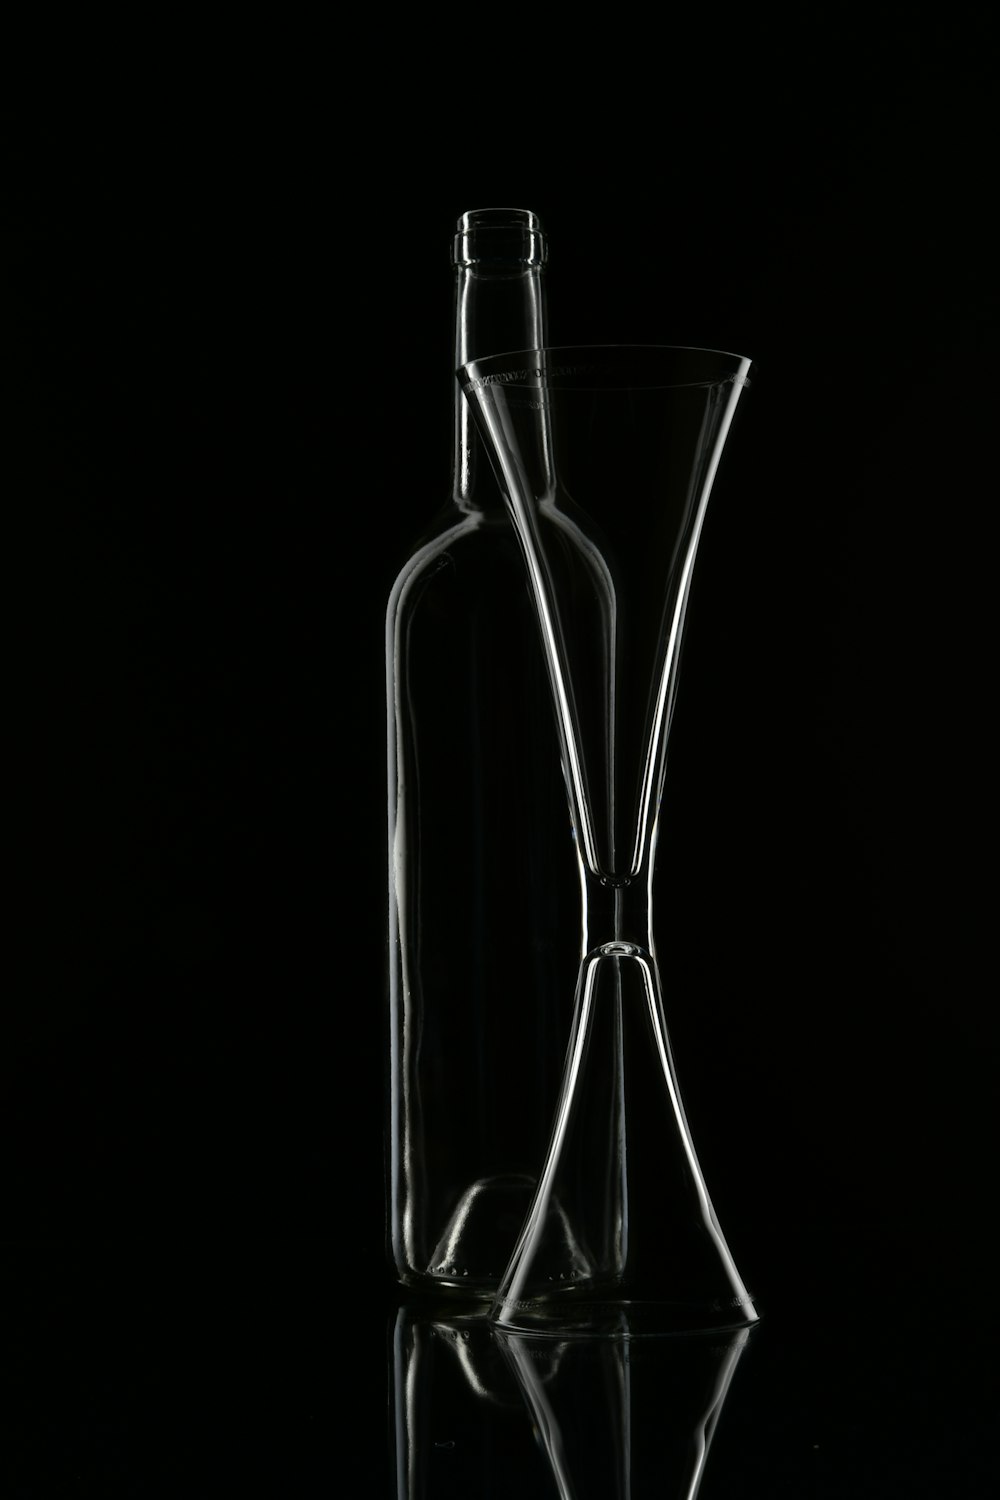 glass bottle illustration